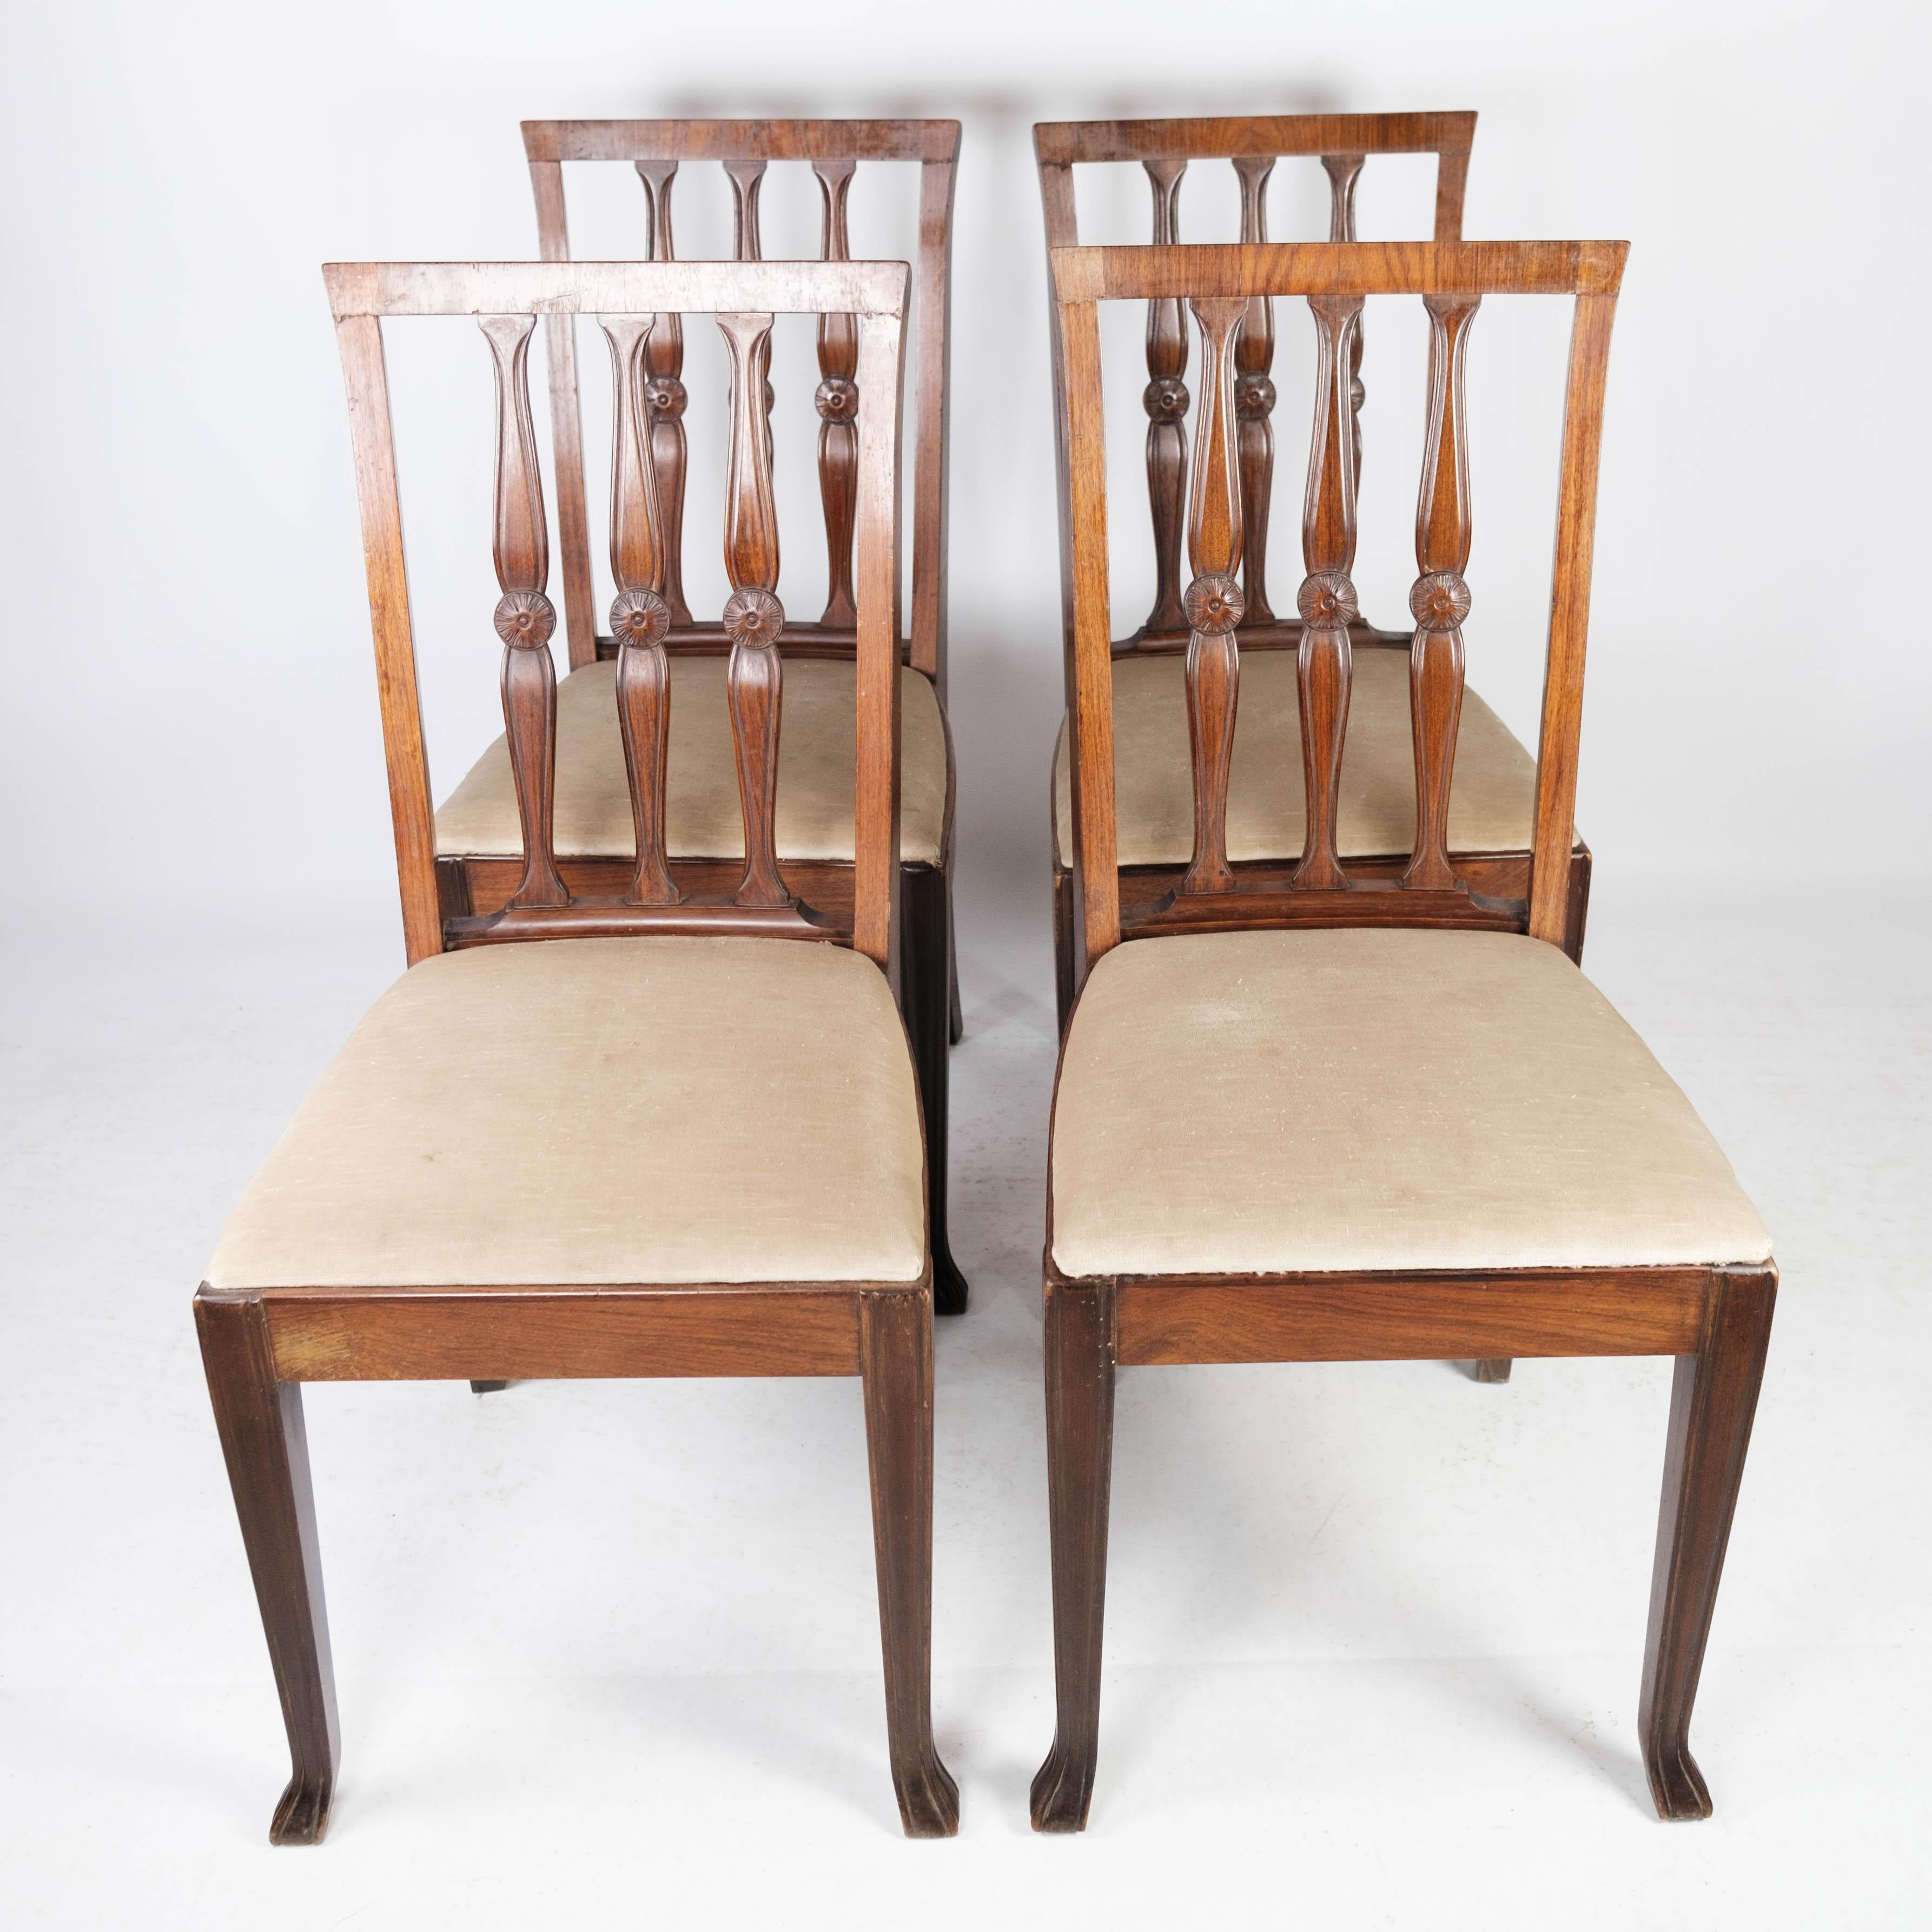 Satz von vier Esszimmerstühlen aus Palisanderholz und mit hellem Stoff gepolstert, in gutem antiken Zustand aus den 1920er Jahren.
   